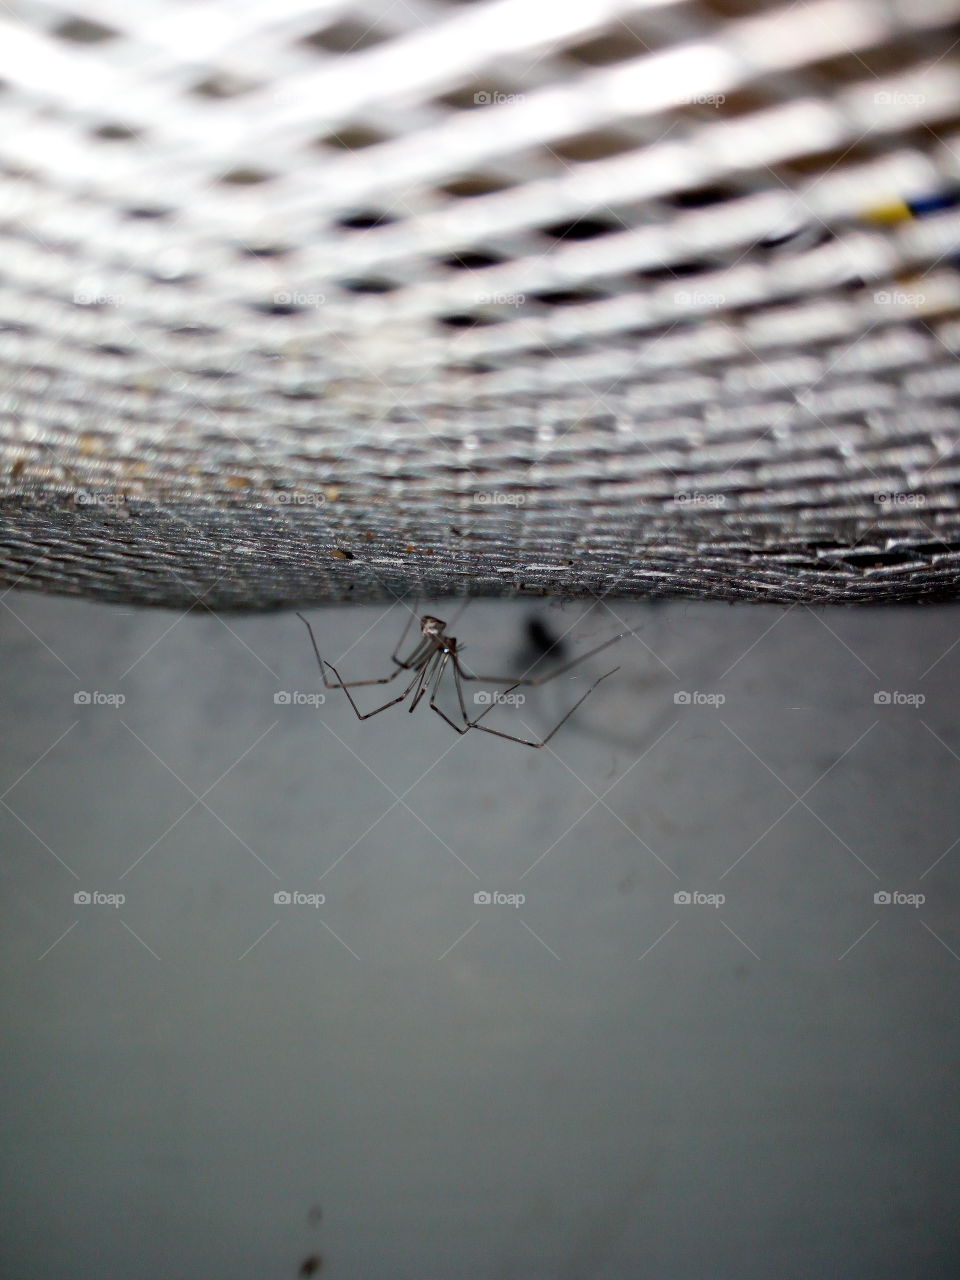 Spider Nets